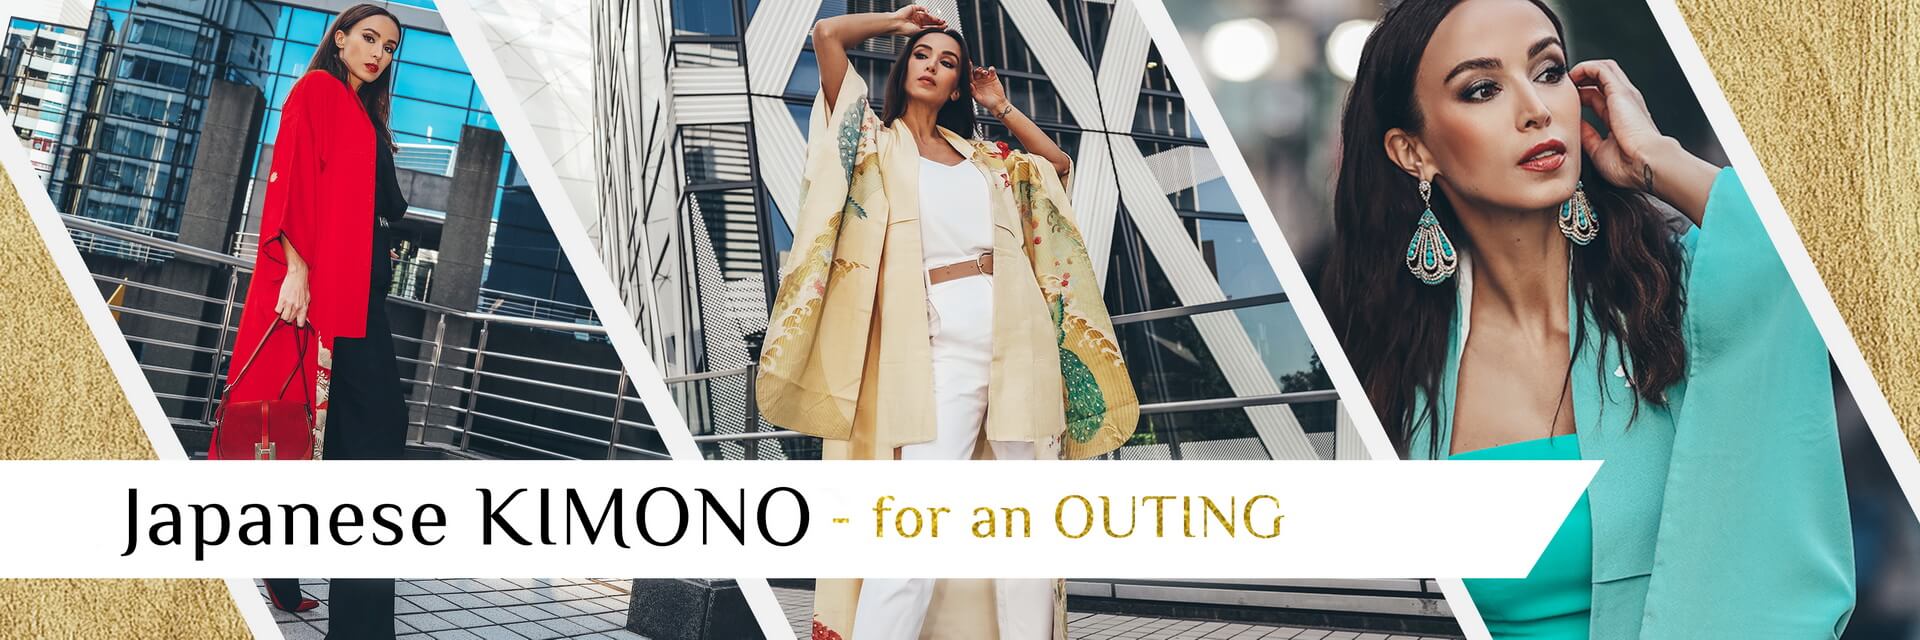 Kimono for an Outing